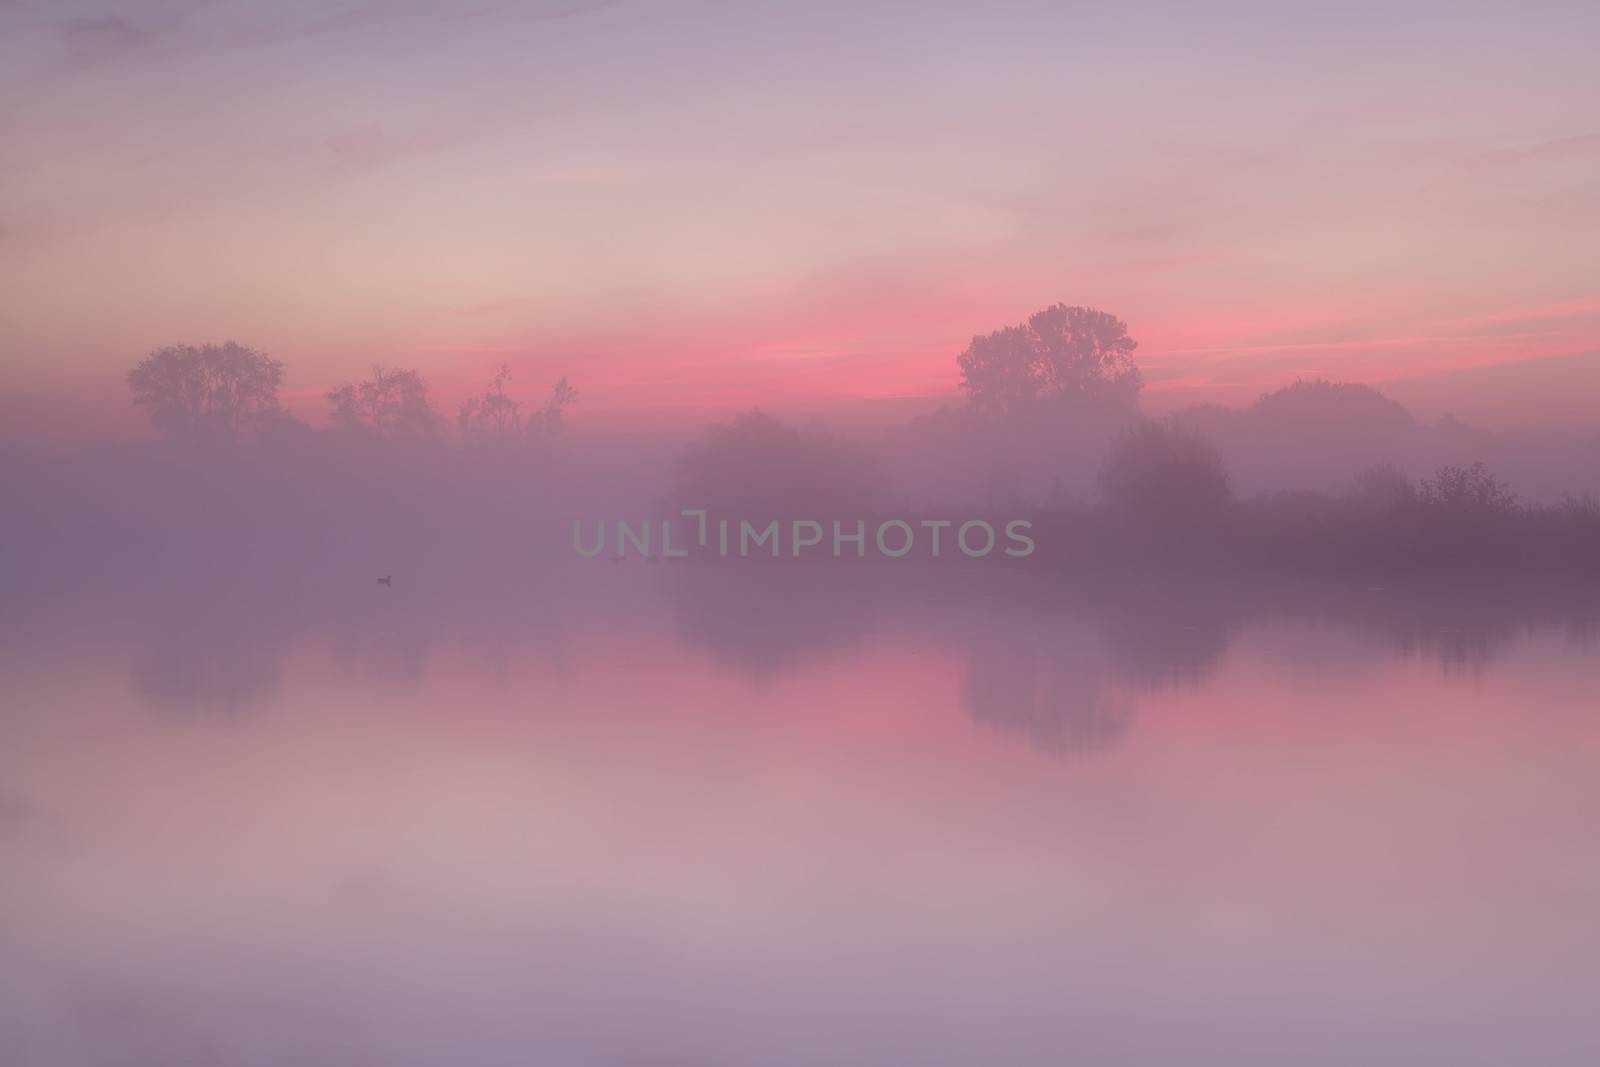 red  misty sunrise over calm lake, Drenthe, Netherlands